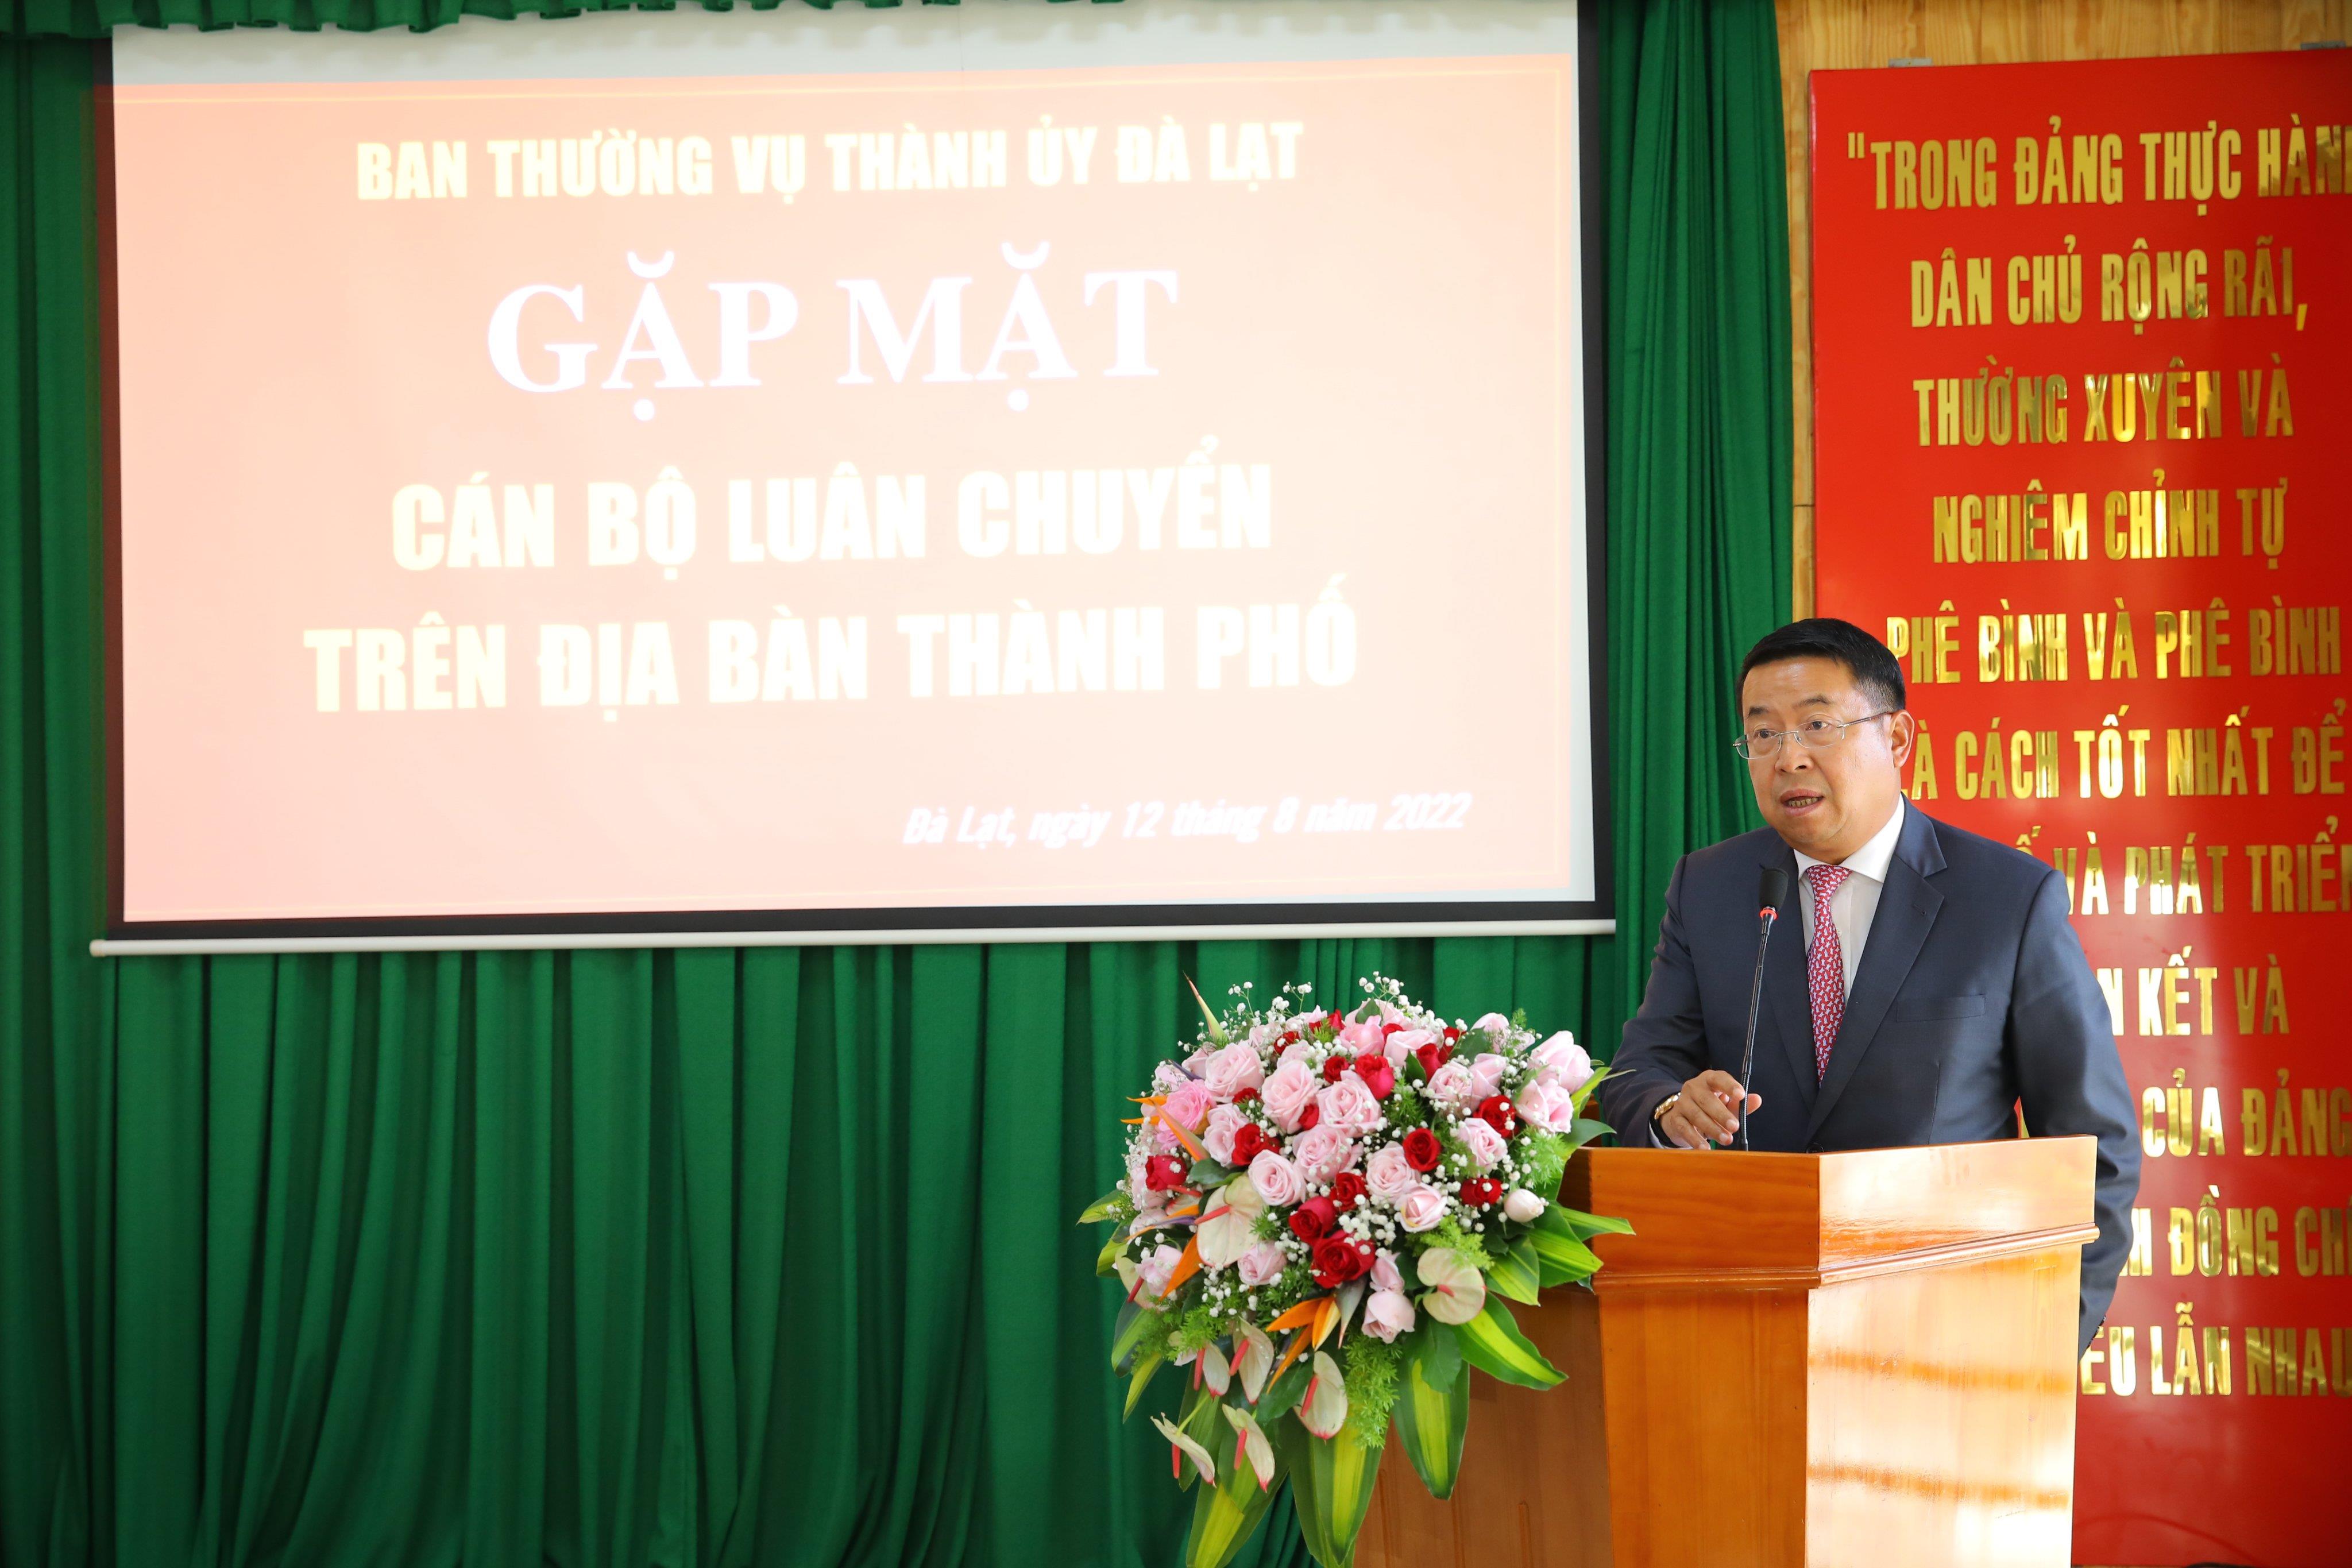 Đồng chí Tôn Thiện San - Chủ tịch UBND thành phố phát biểu tại hội nghị